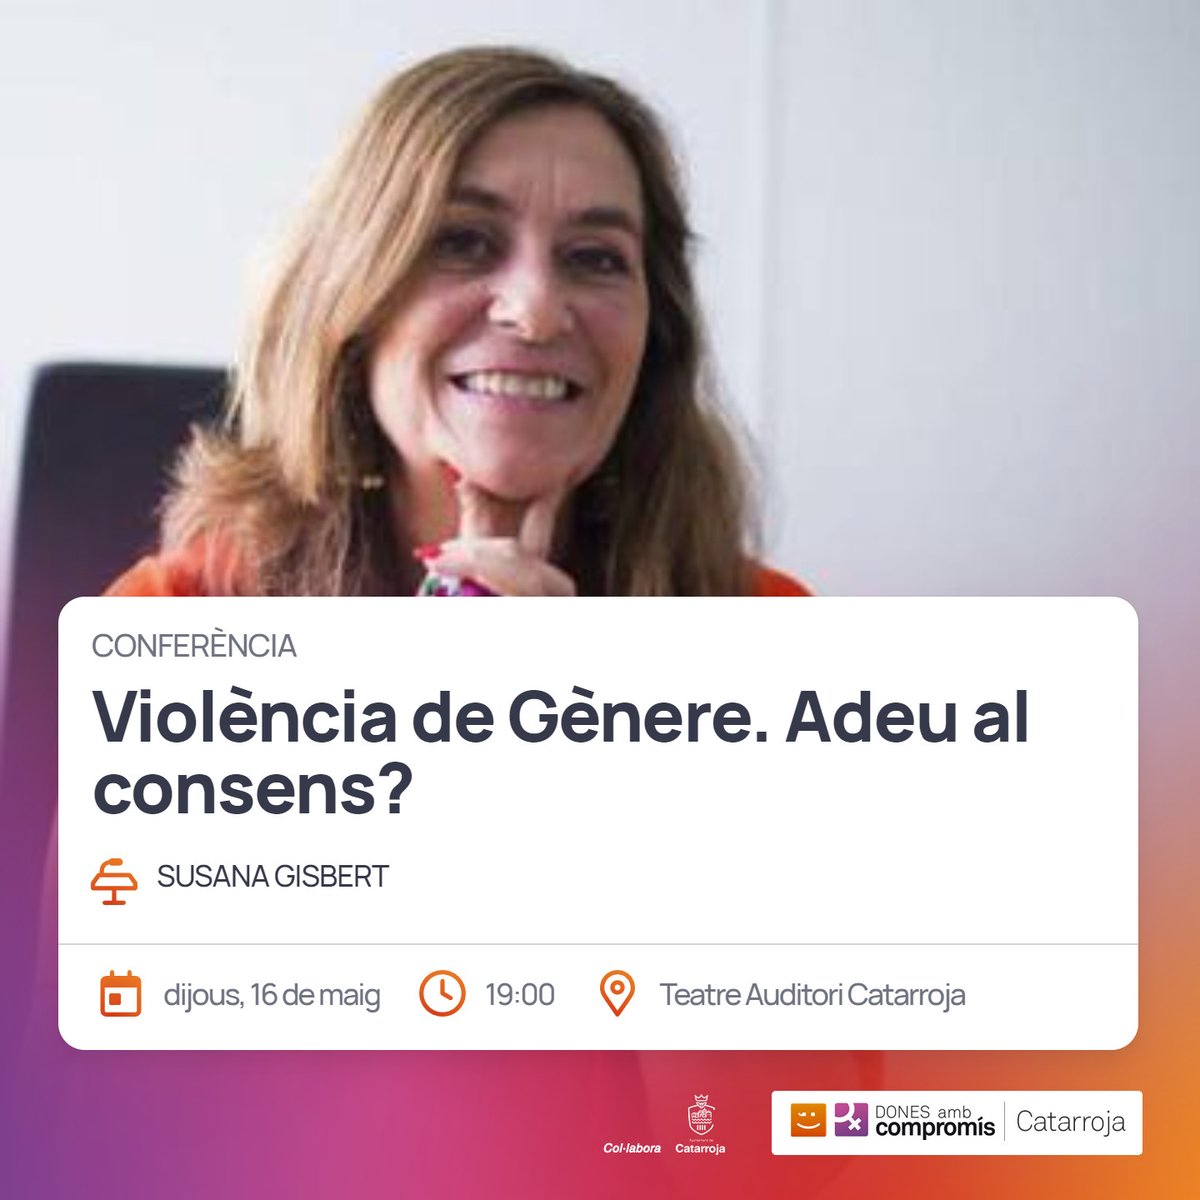 Hoy en #Catarroja hablaremos de #ViolenciaDeGénero 
#PorEllas